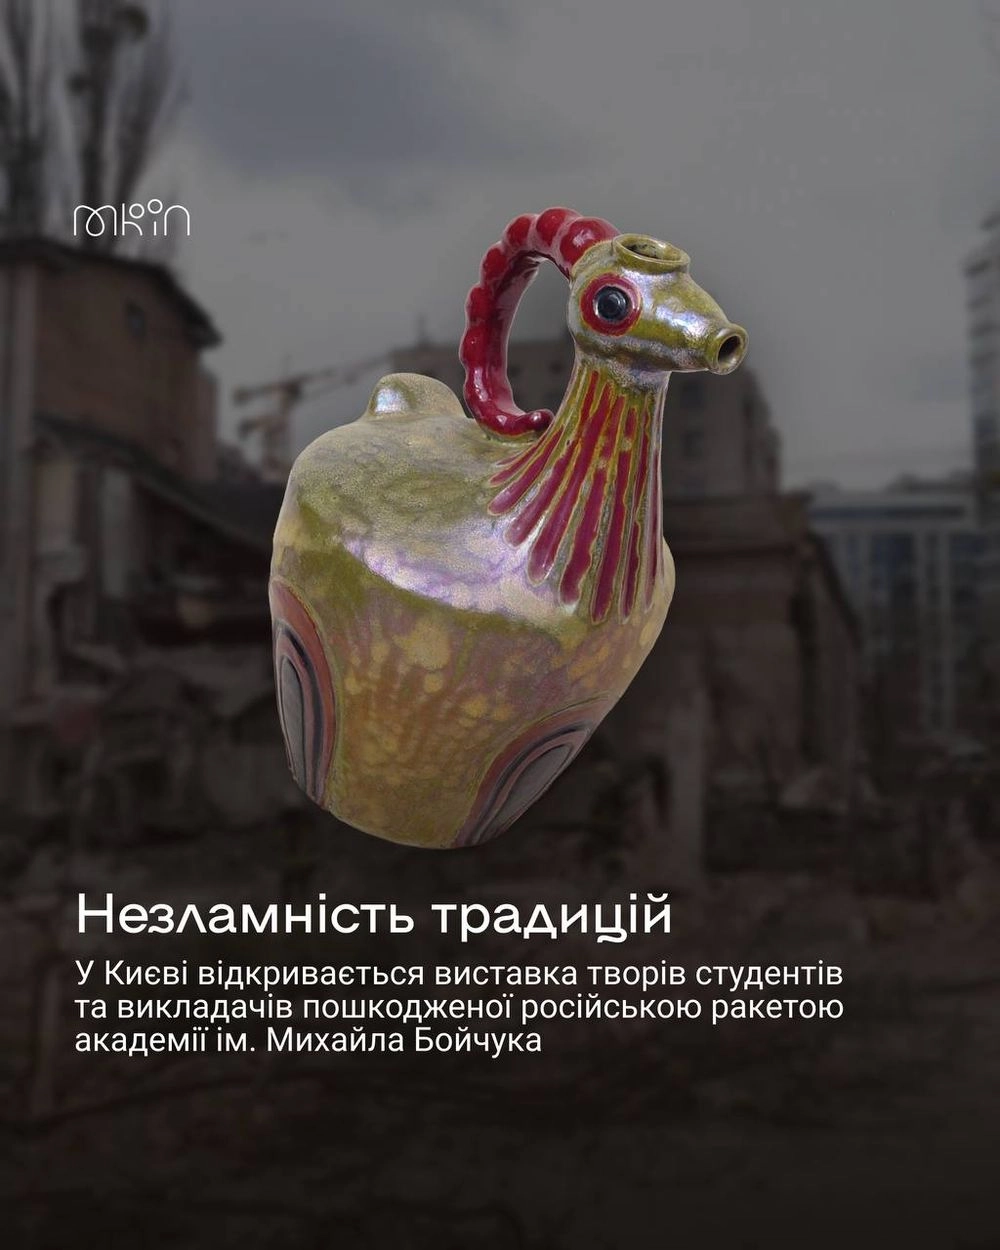 У Києві відкрилася виставка "Незламні традиції", на якій представлено твори пошкодженої російською ракетою Академії ім. Бойчука